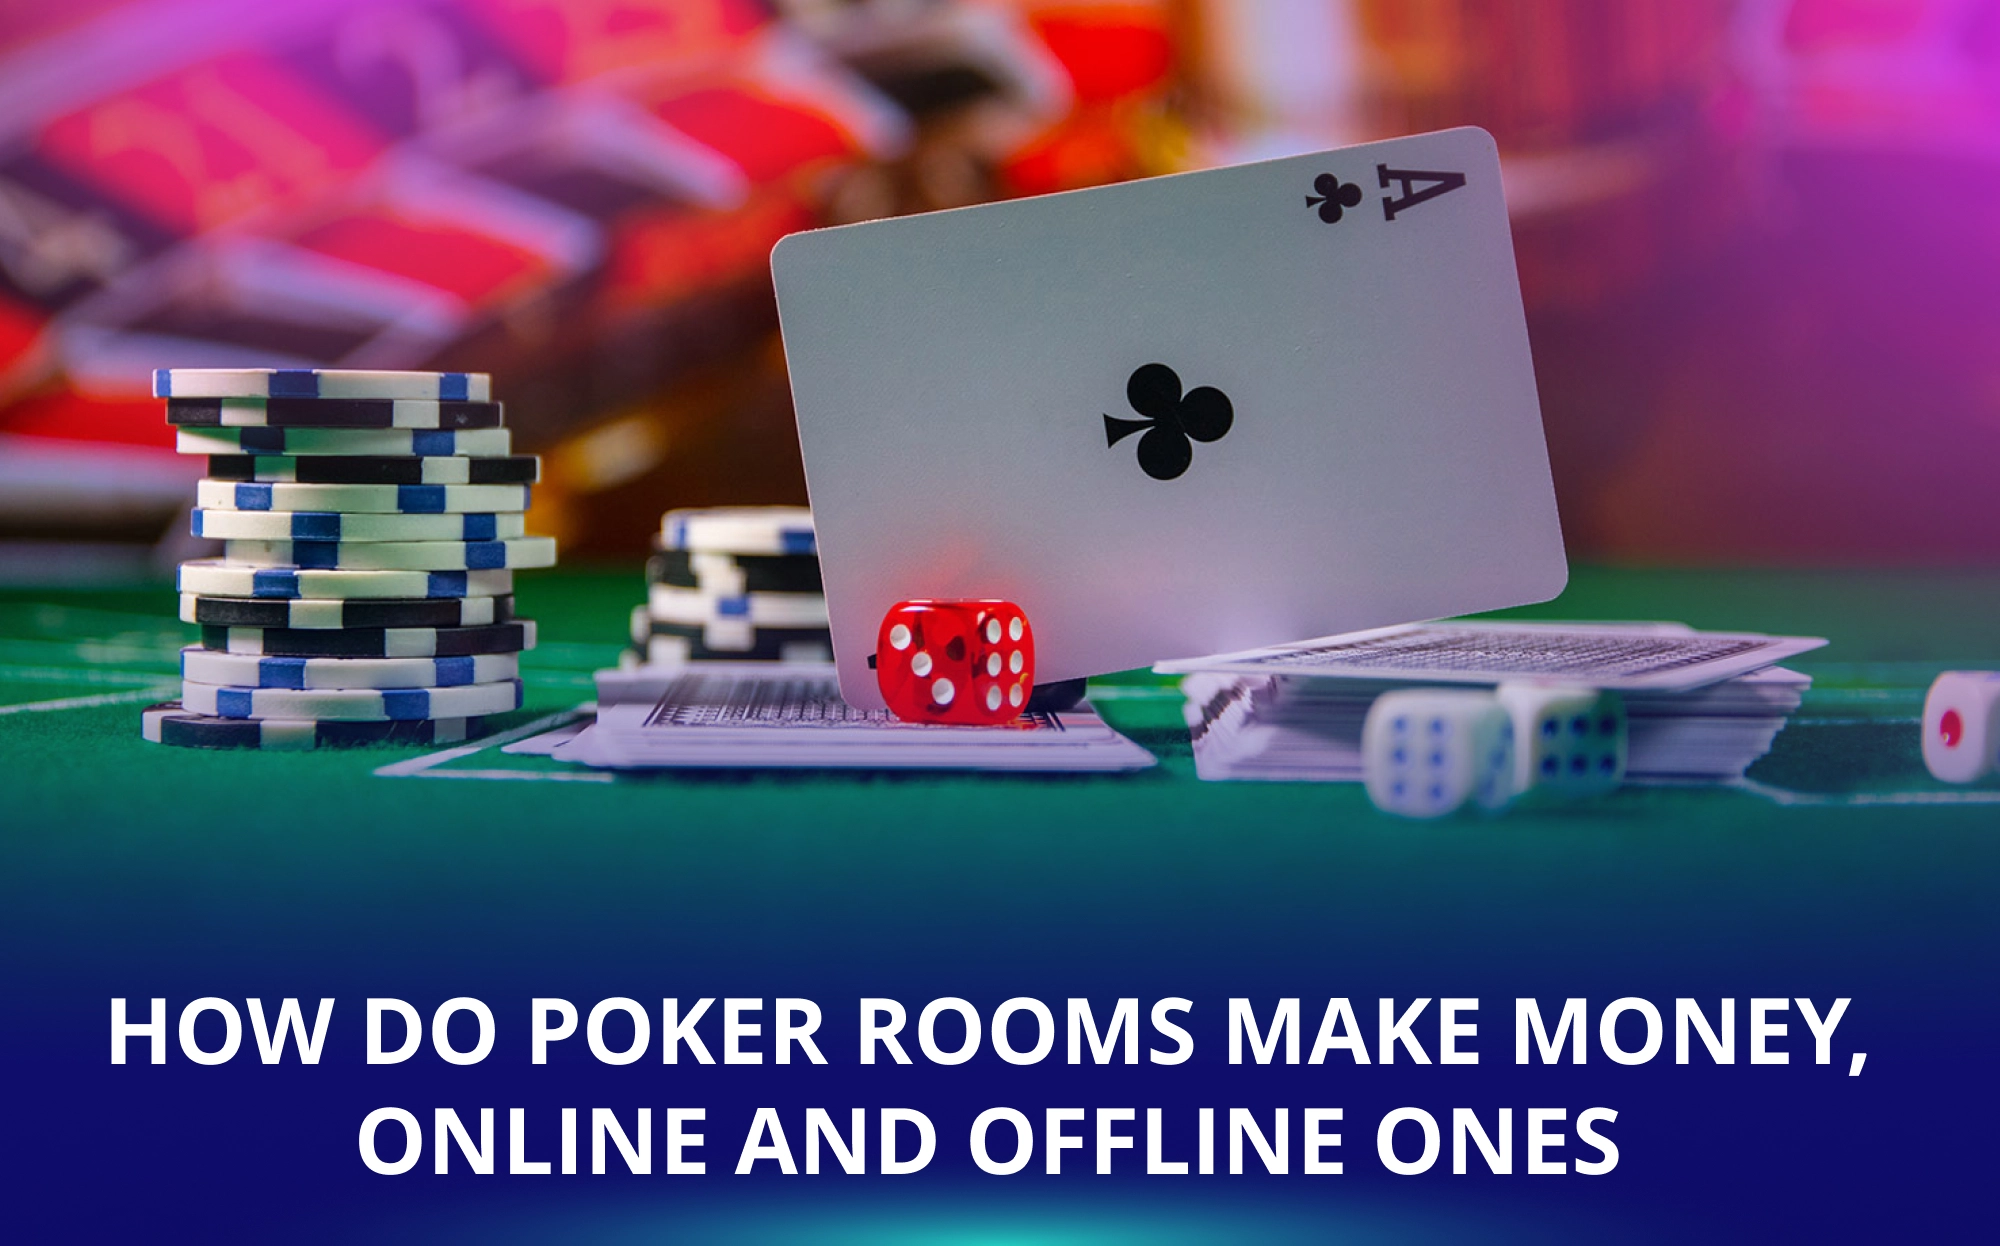 How Do Poker Rooms Make Money, Online and Offline Ones